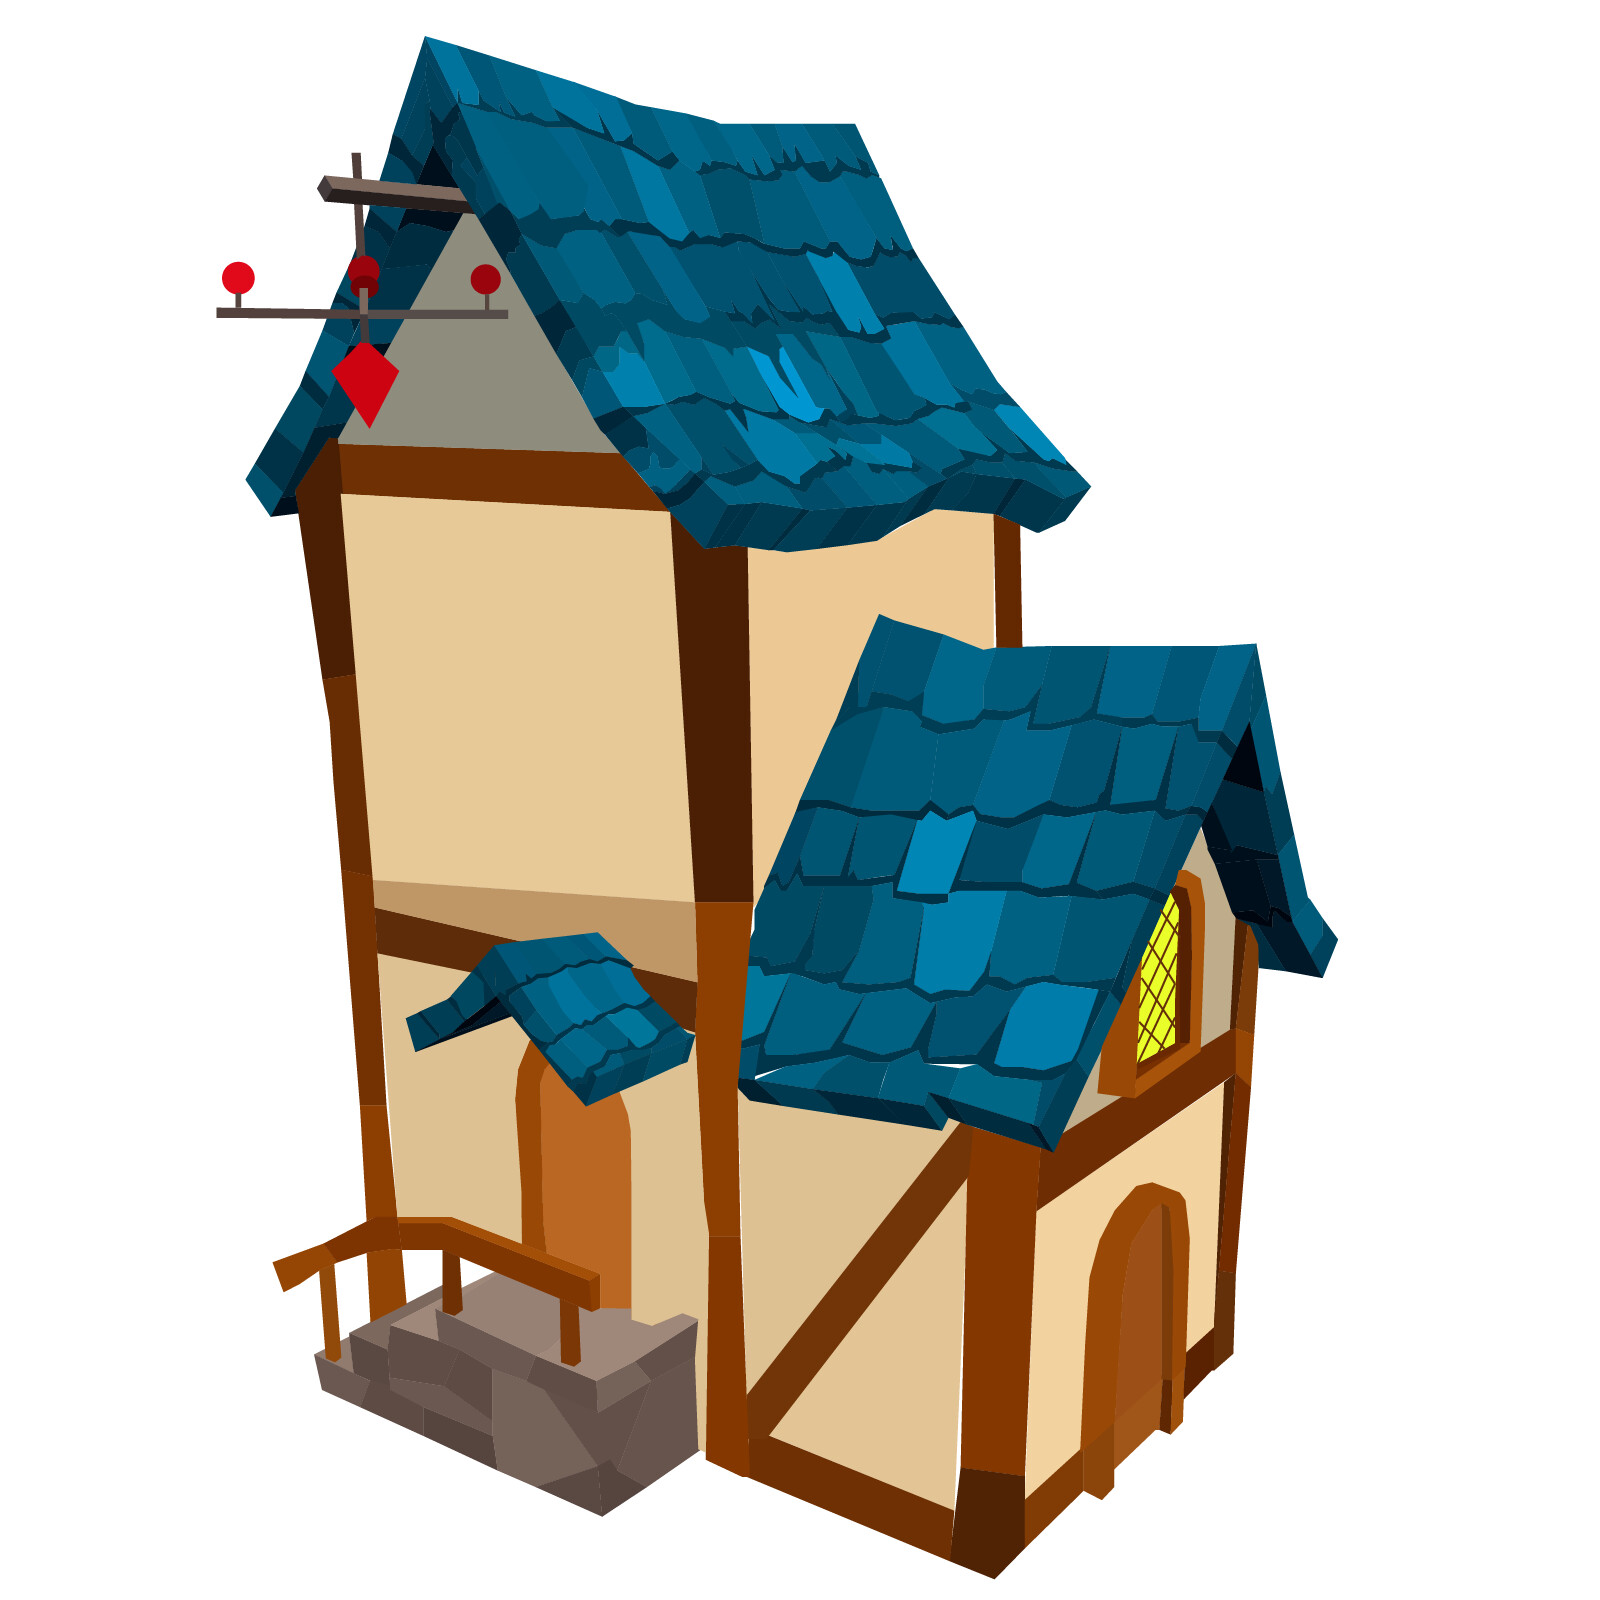 ArtStation - vector of fantasy house